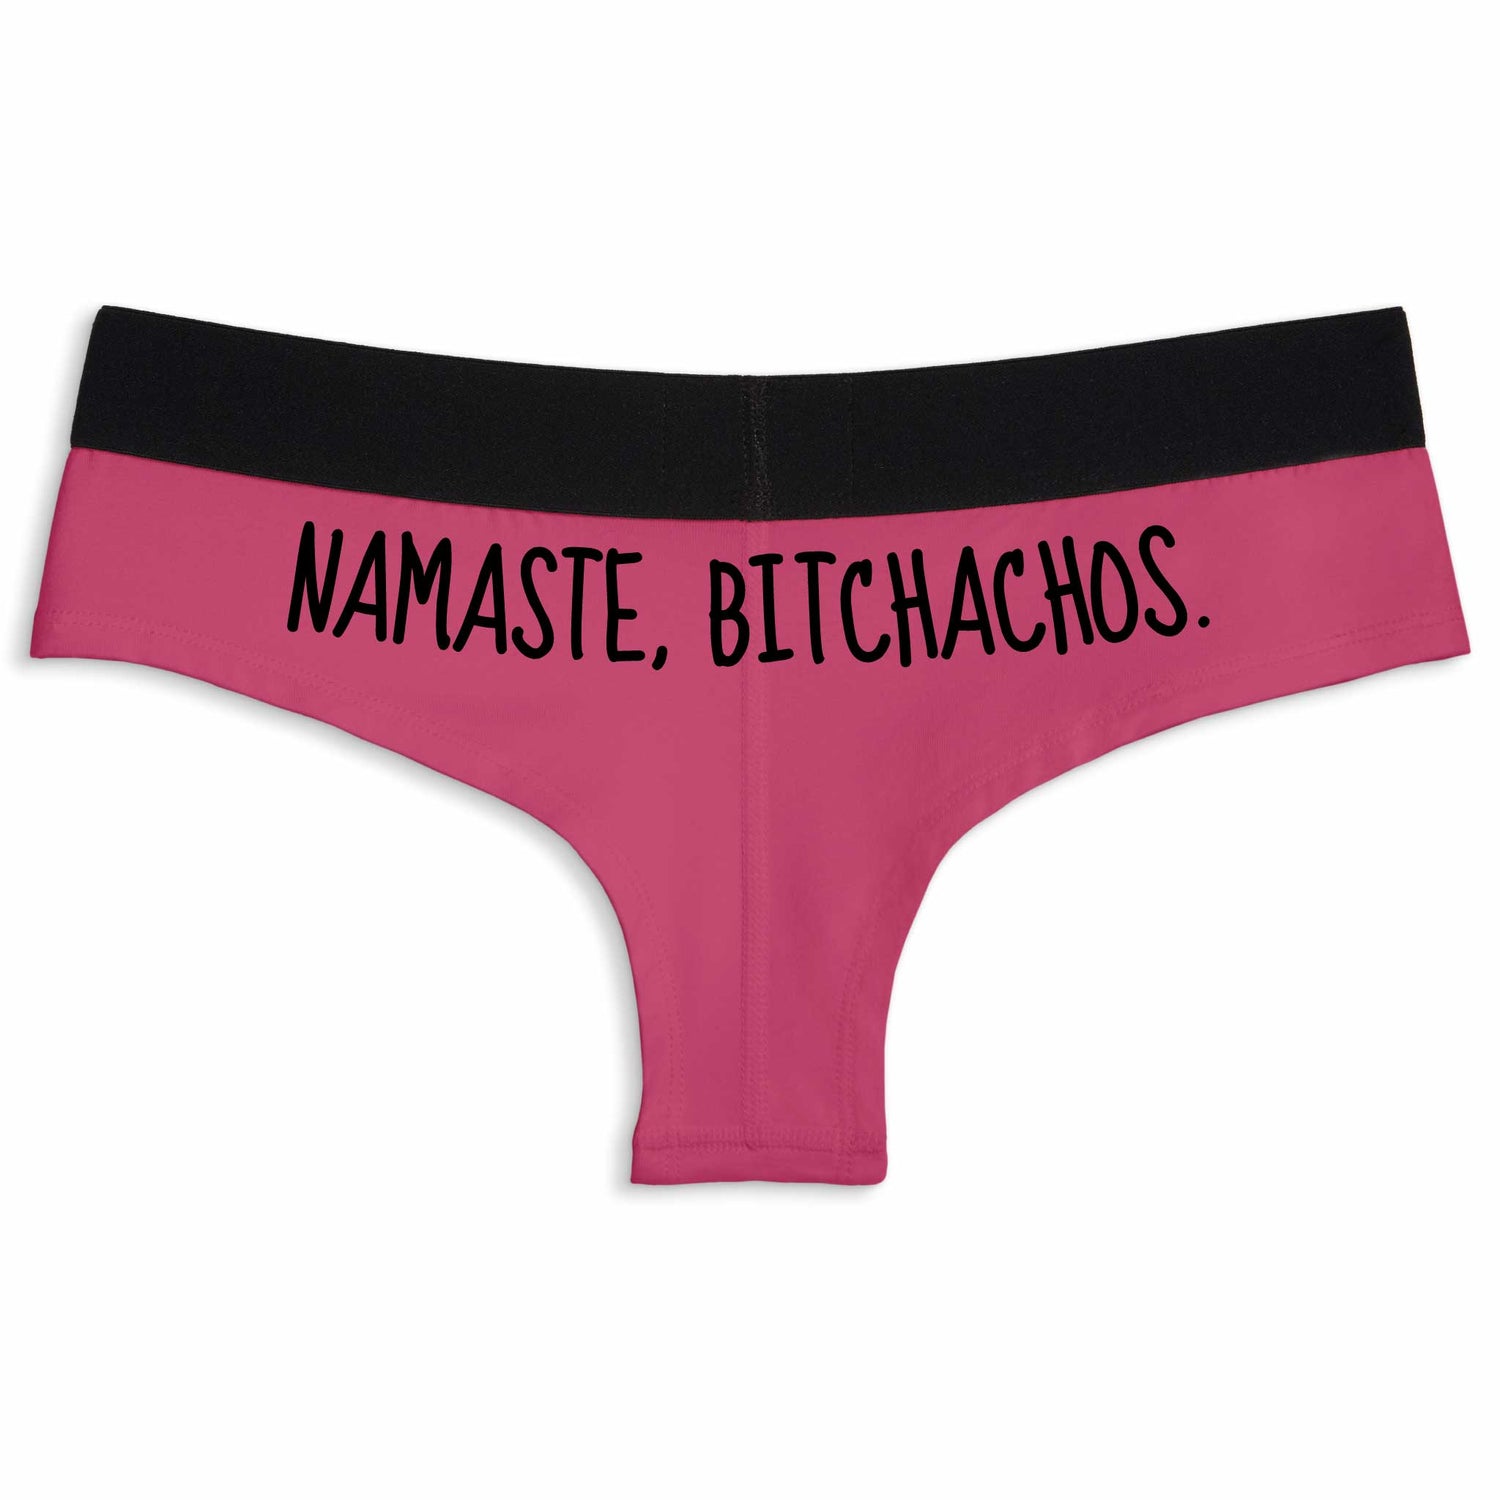 Namaste, Bitchachos. | Cheeky underwear